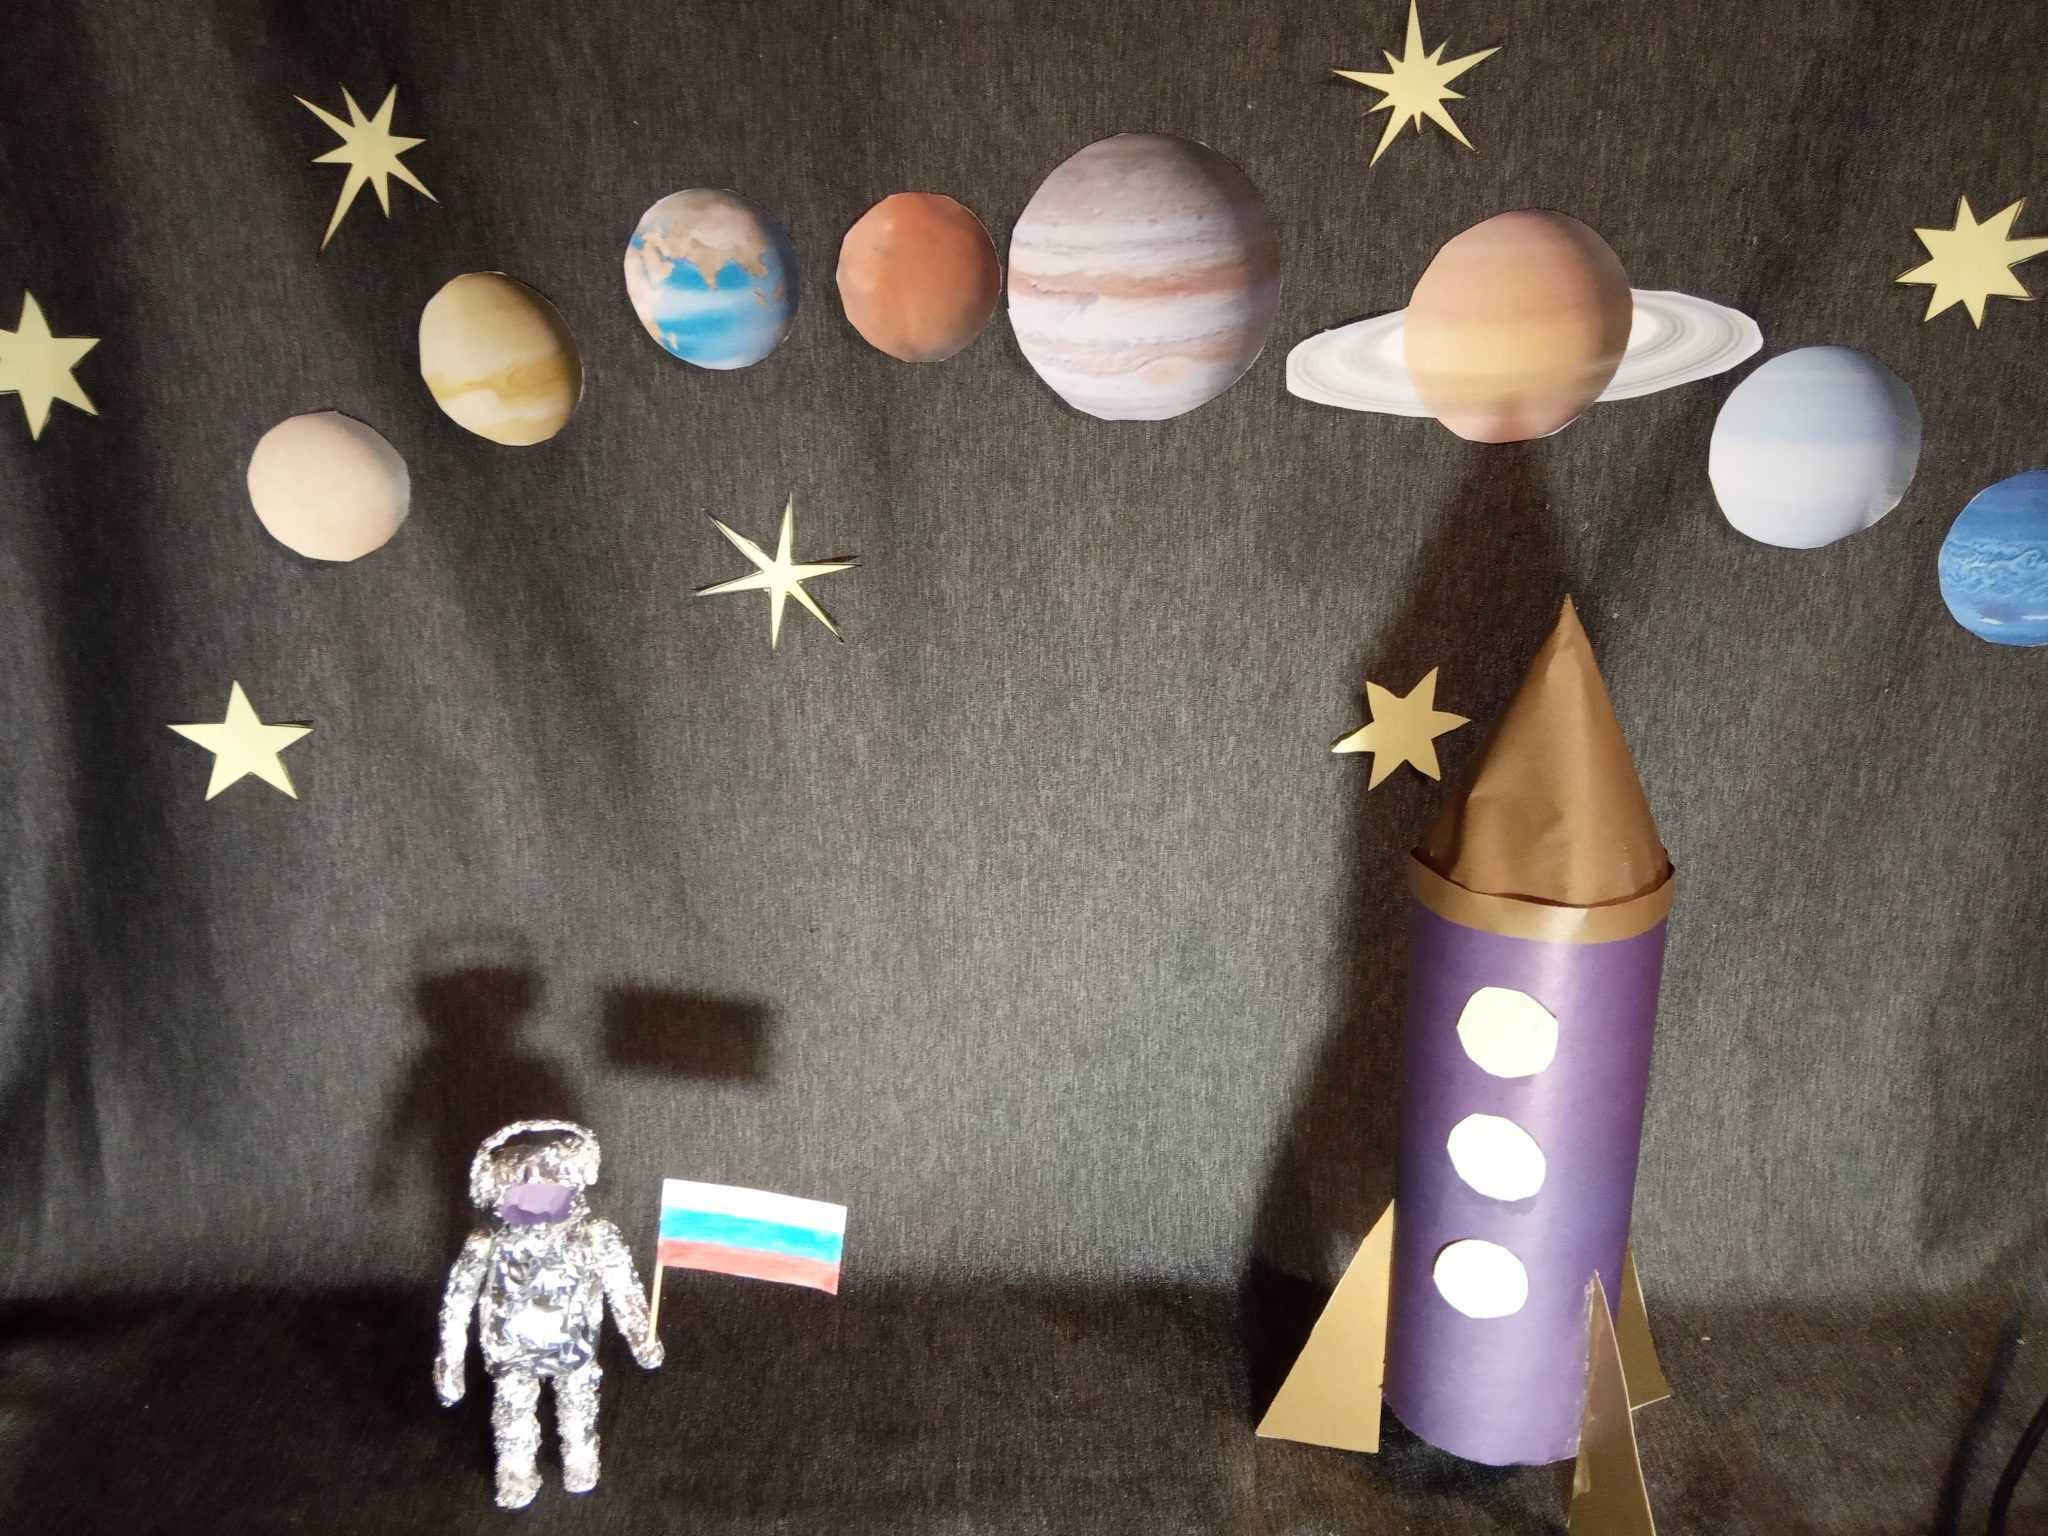 Поделки из бумаги на тему космос. Конкурс поделок ко Дню космонавтики в детском саду. Полелка на темускосмос. Паделка на туму космас. Под делка на тему космос.